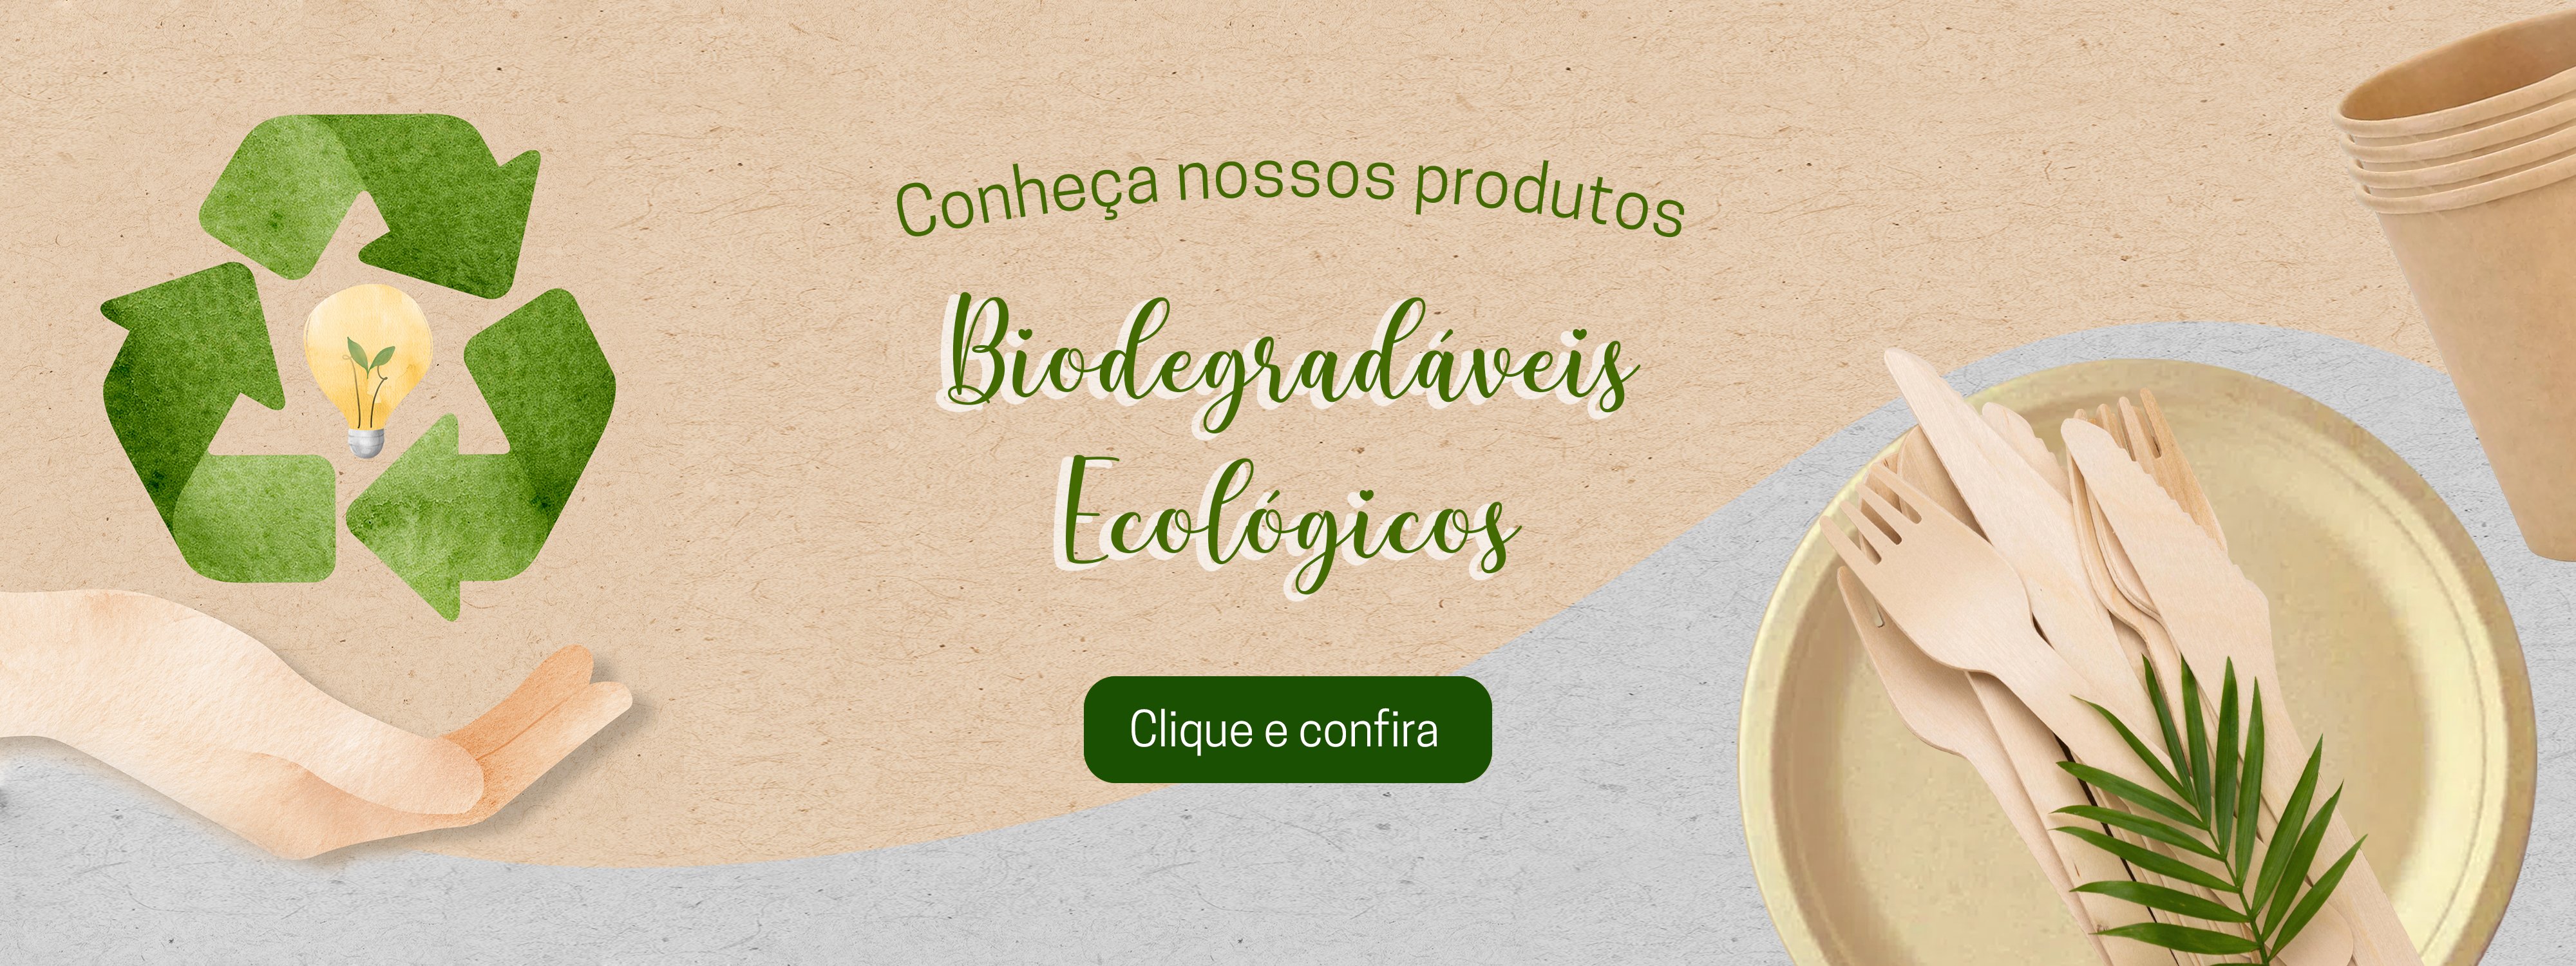 banner-biodegradavel-ecommerce